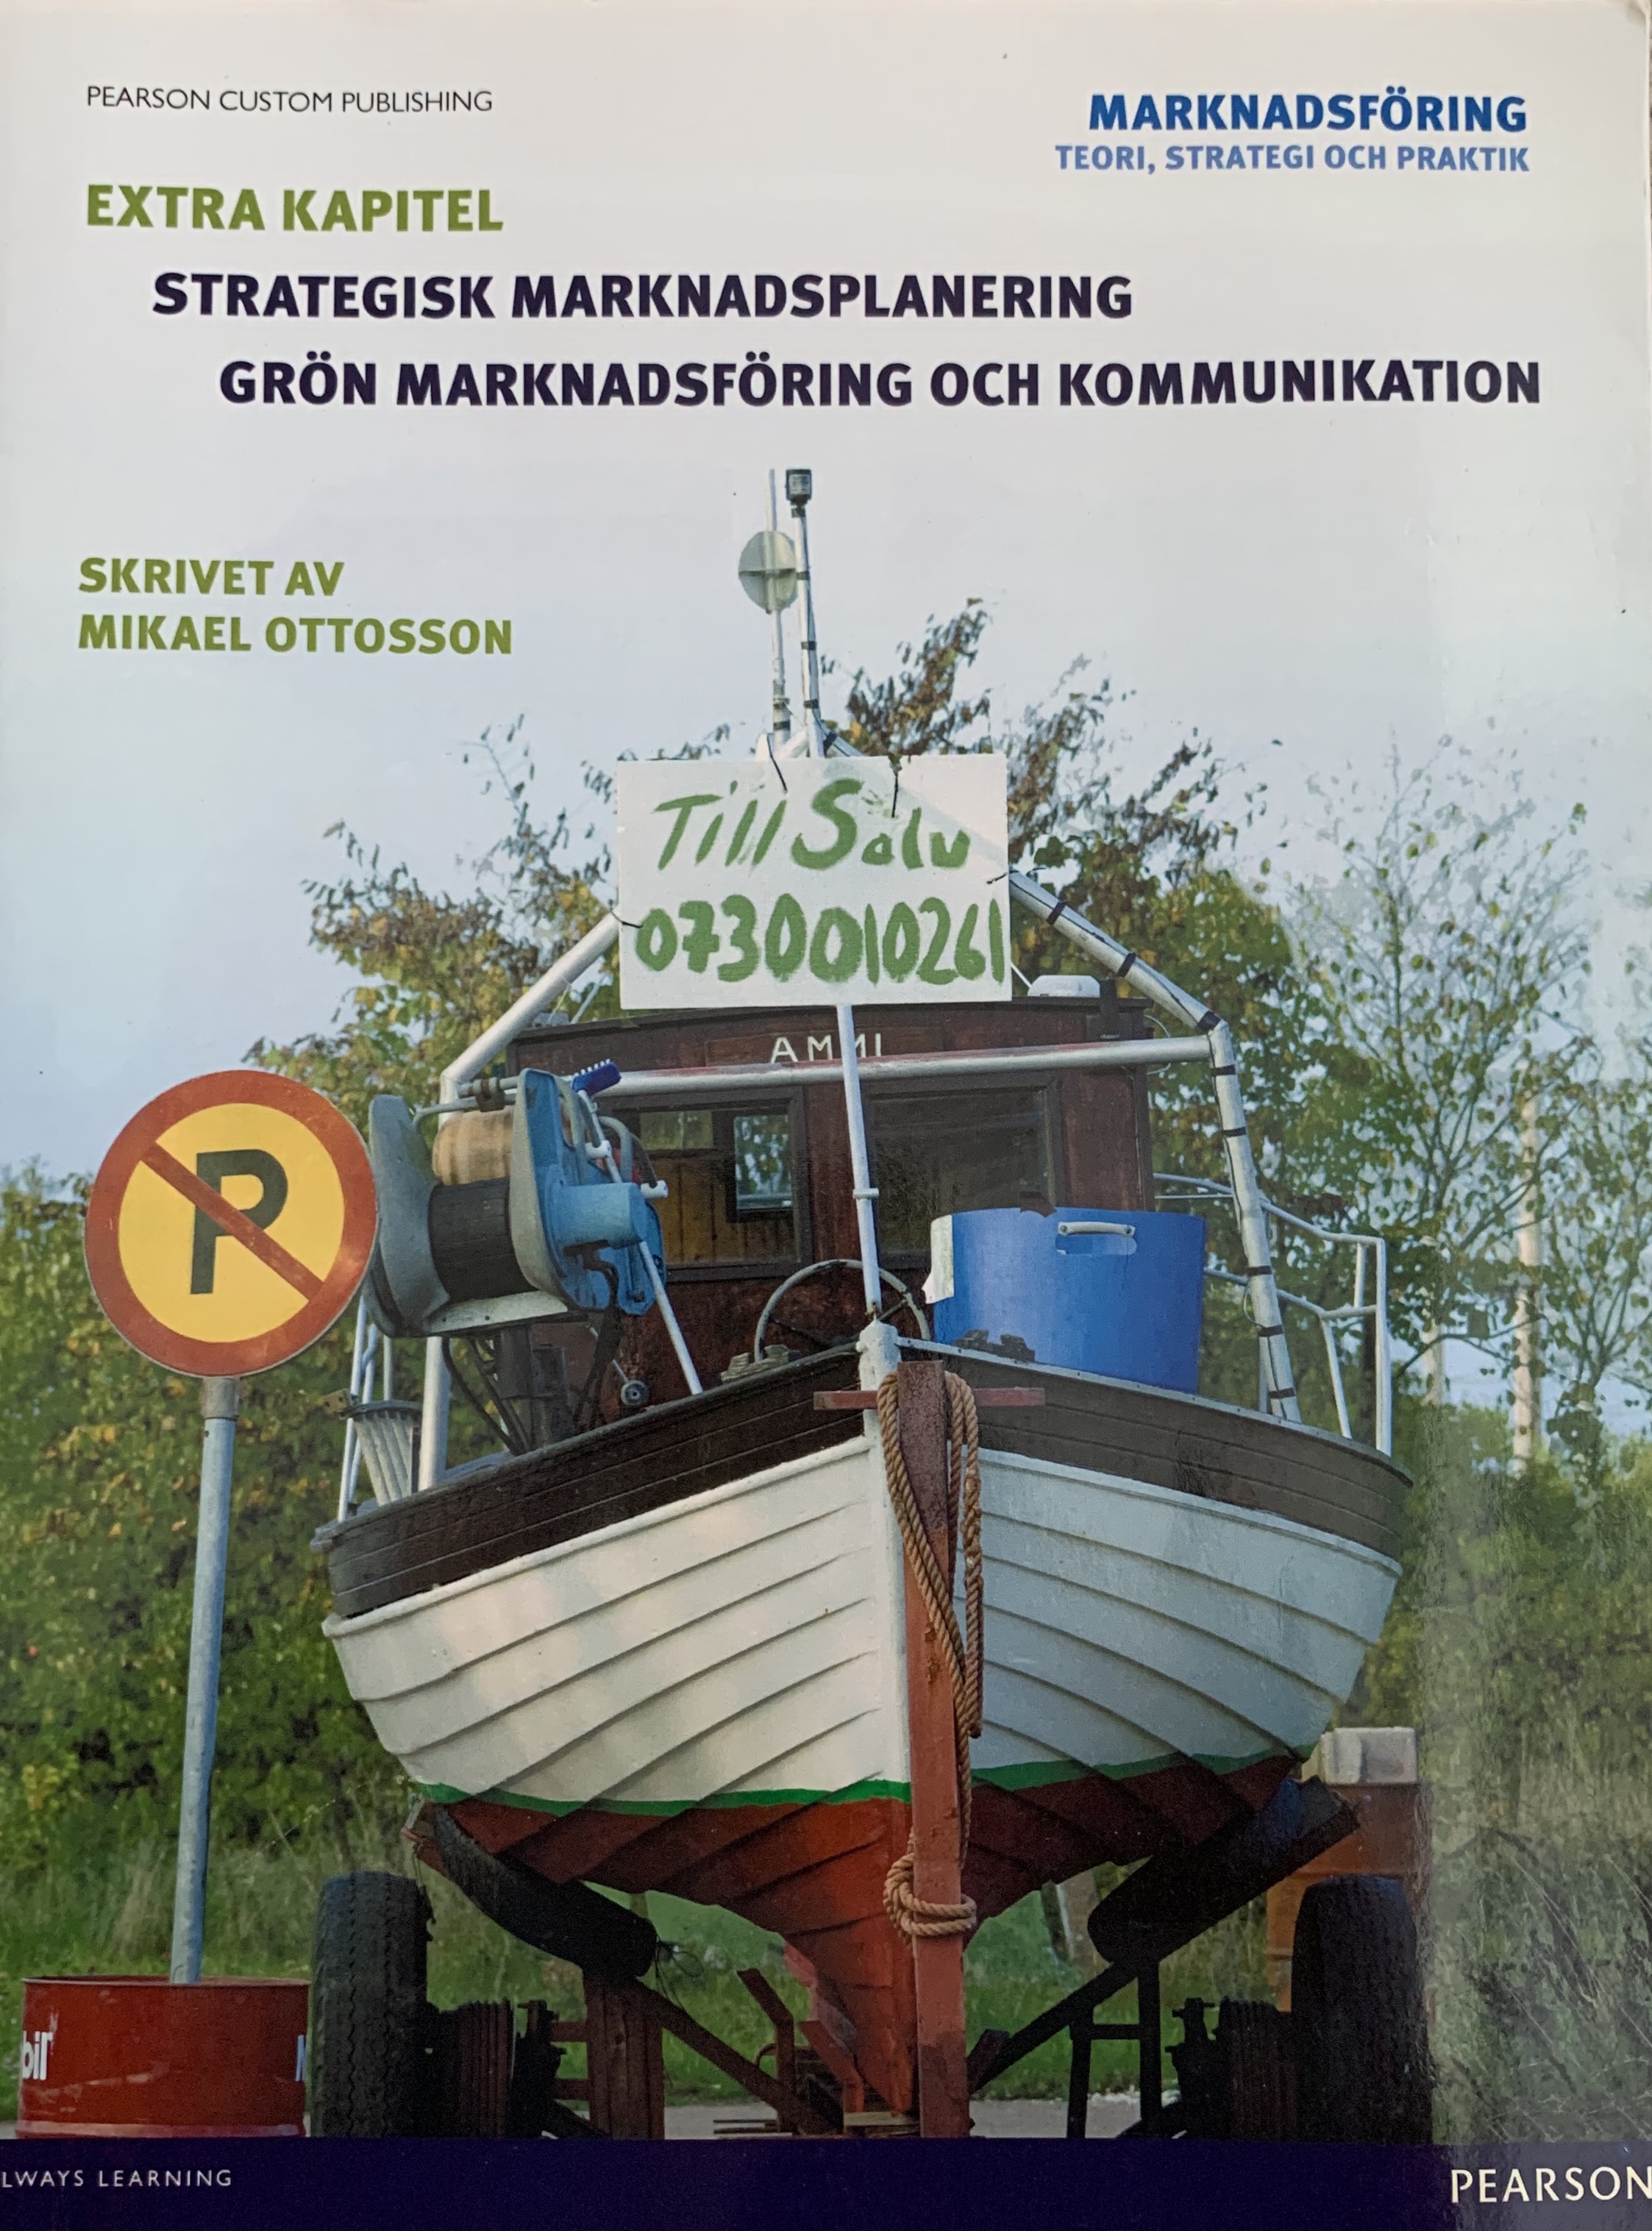 Strategisk marknadsplanering, grön marknadsföring och kommunikation (extrakapitel).; Mikael Ottosson; 2013